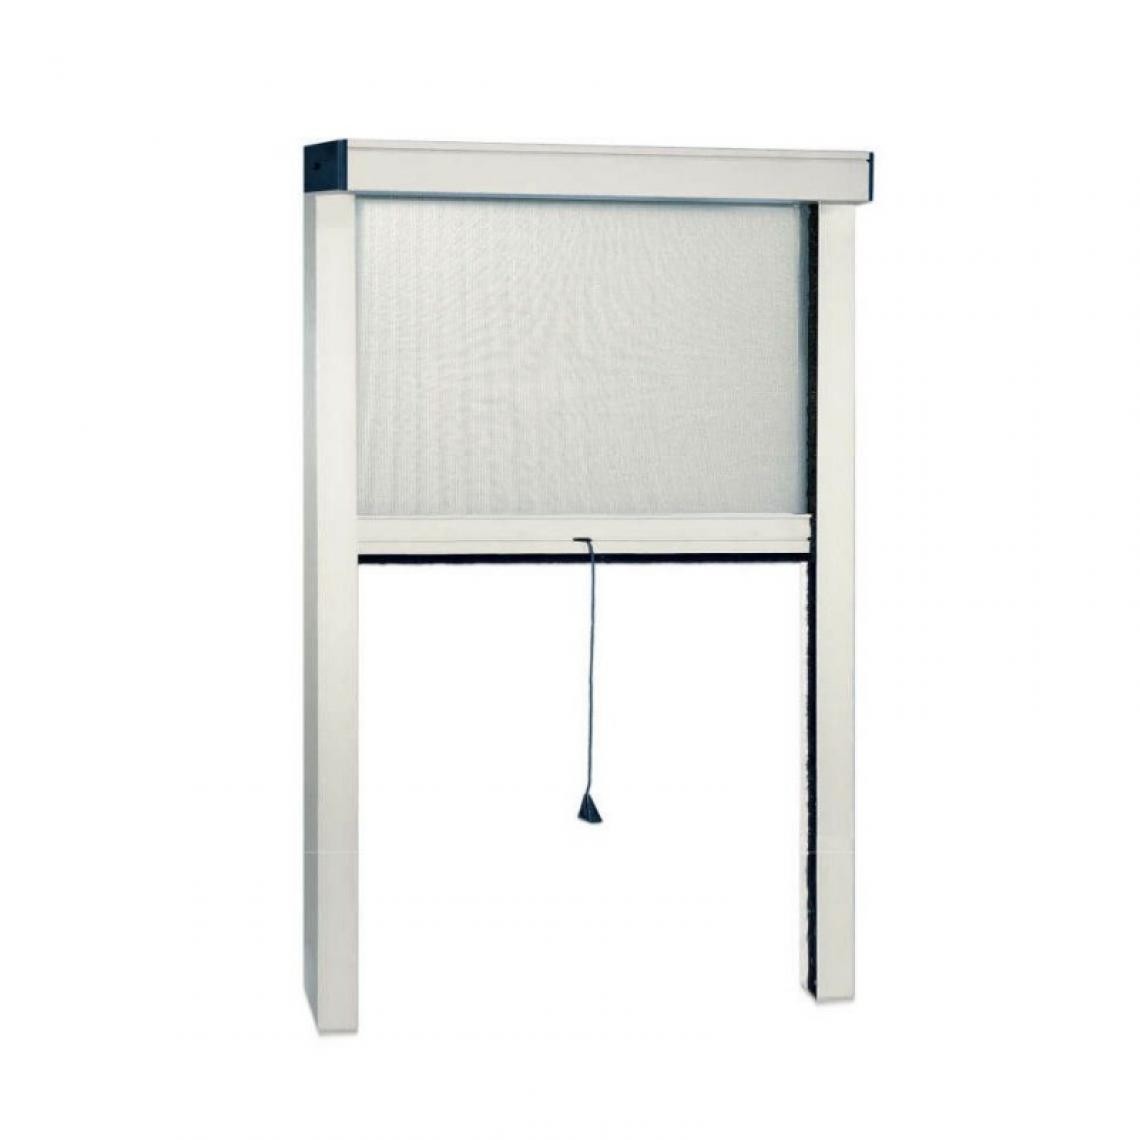 Webmarketpoint - Moustiquaire verticale pour fenêtre blanche cm 120 x 160 h - Moustiquaire Fenêtre